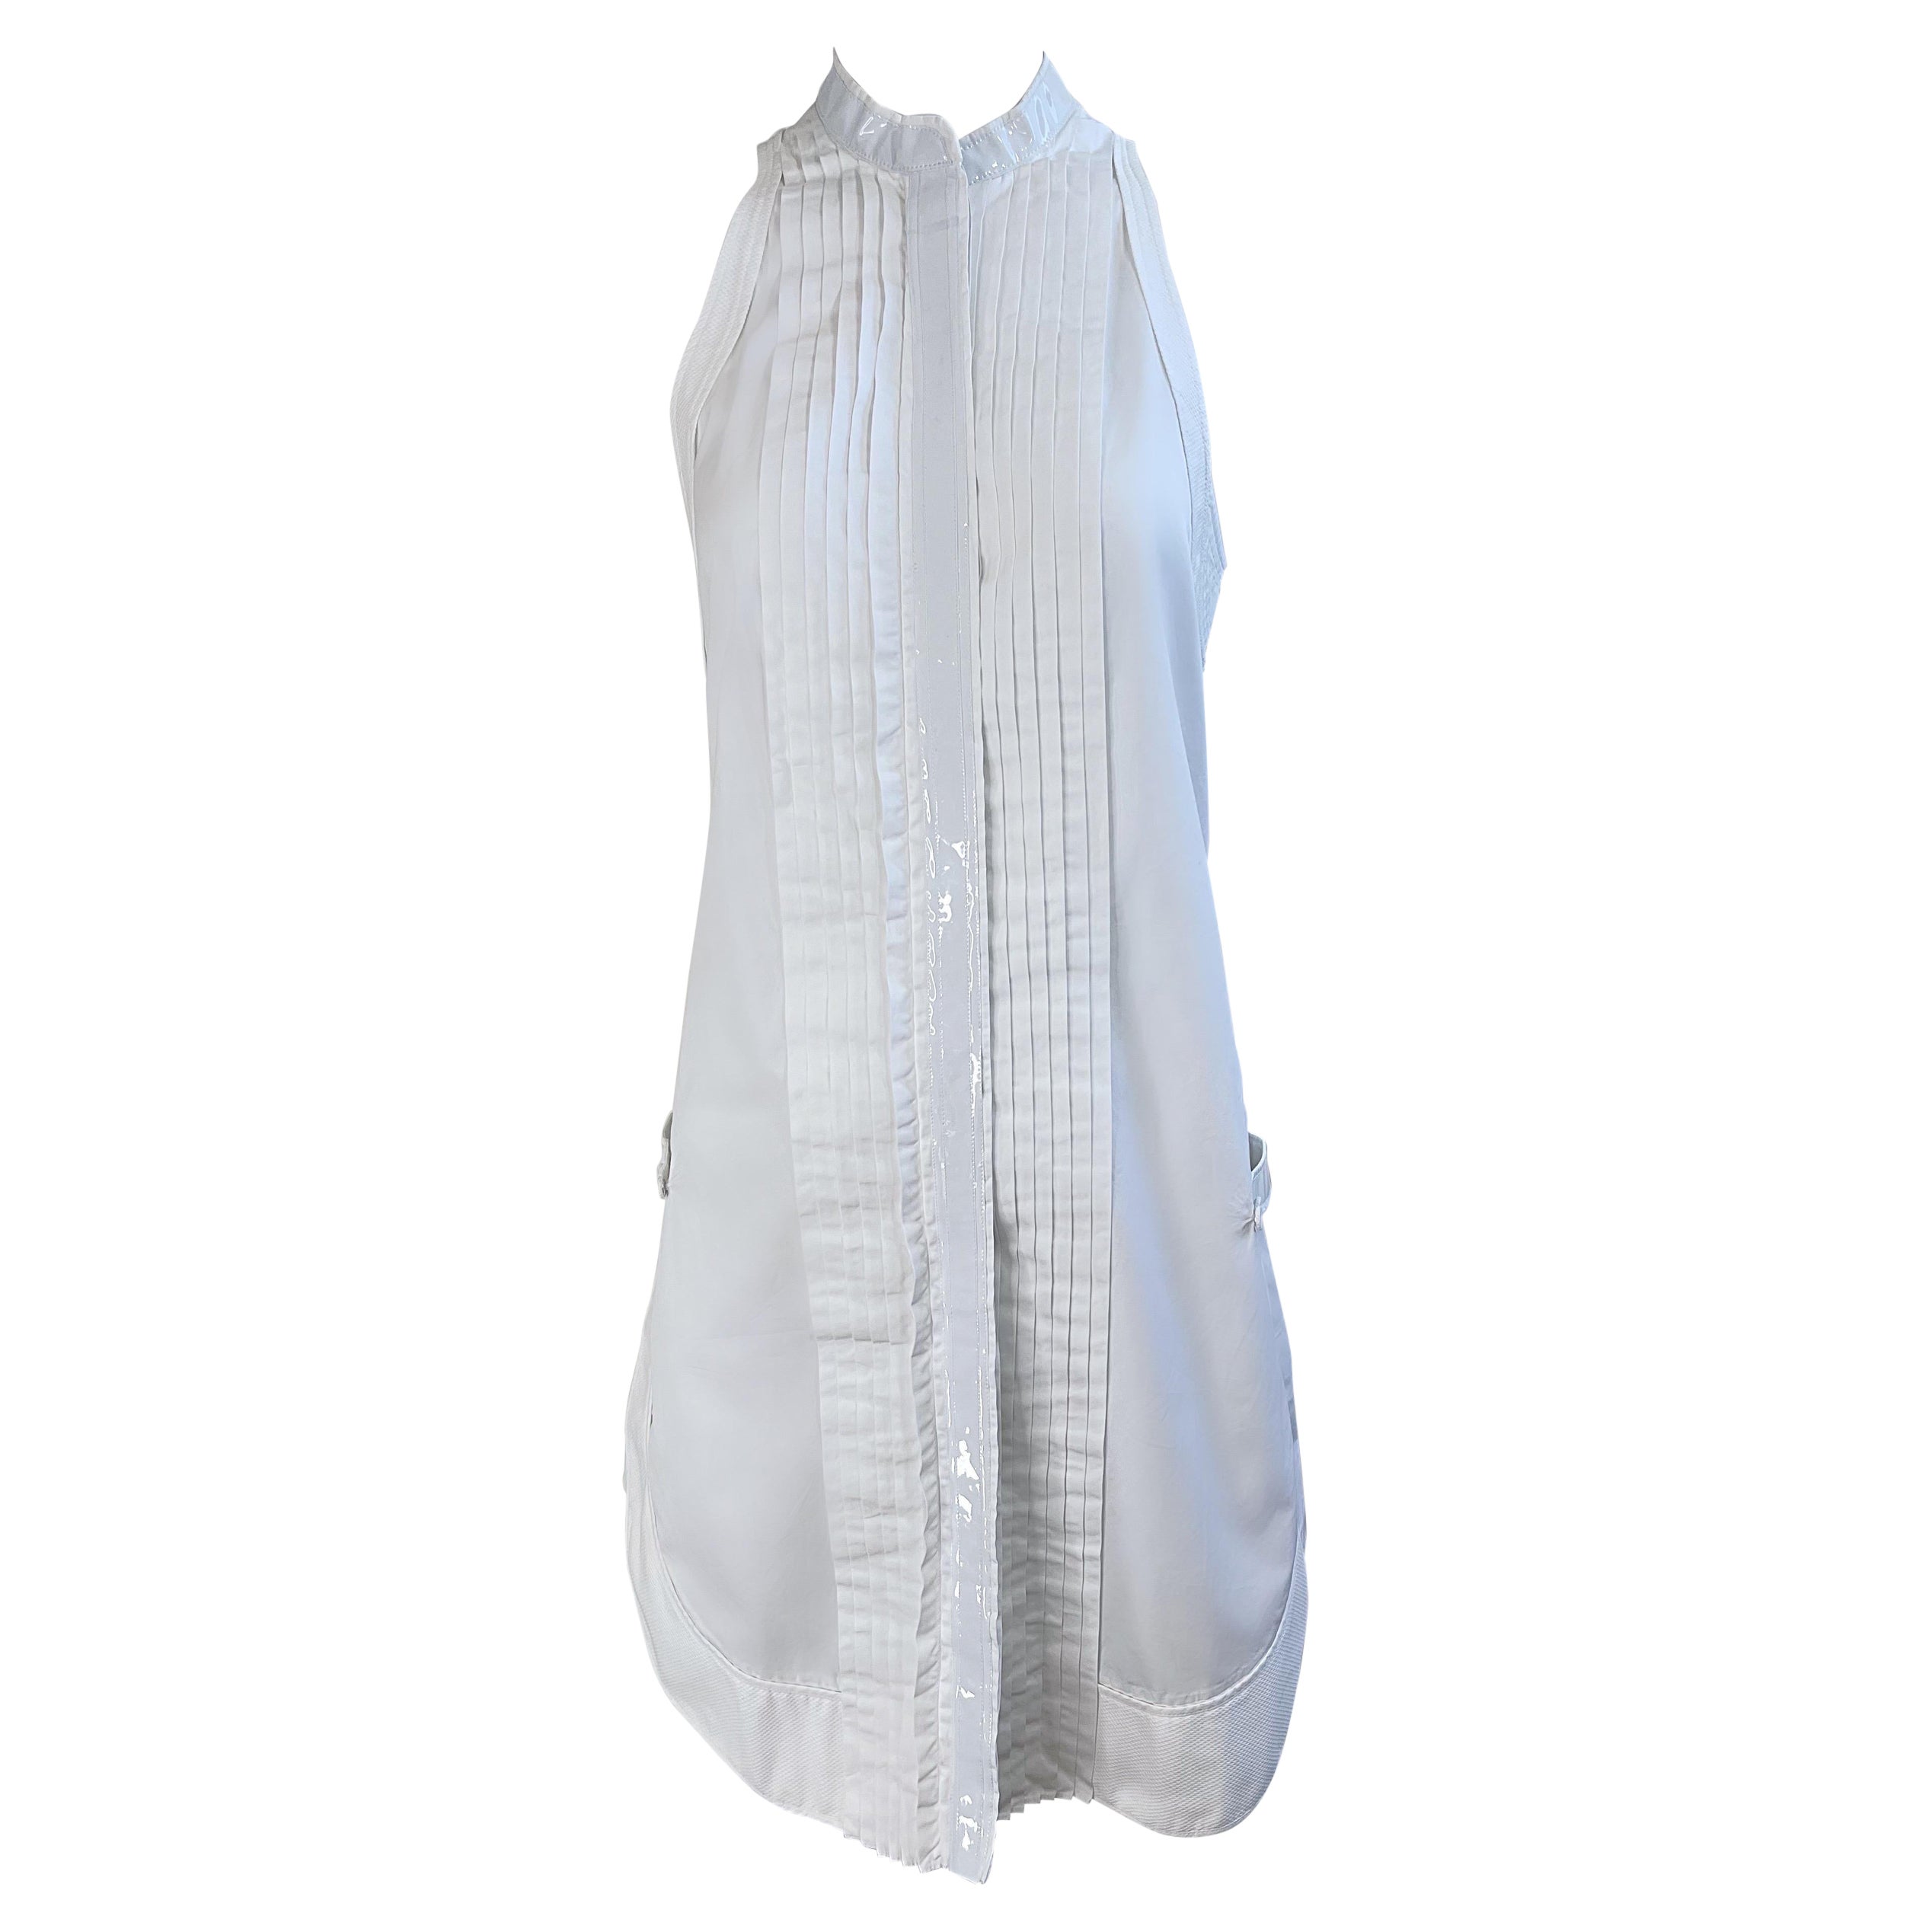 Balenciaga Spring 2007 by Nicolas Ghesquiere Size 38 / 8 White Tuxedo Dress  For Sale